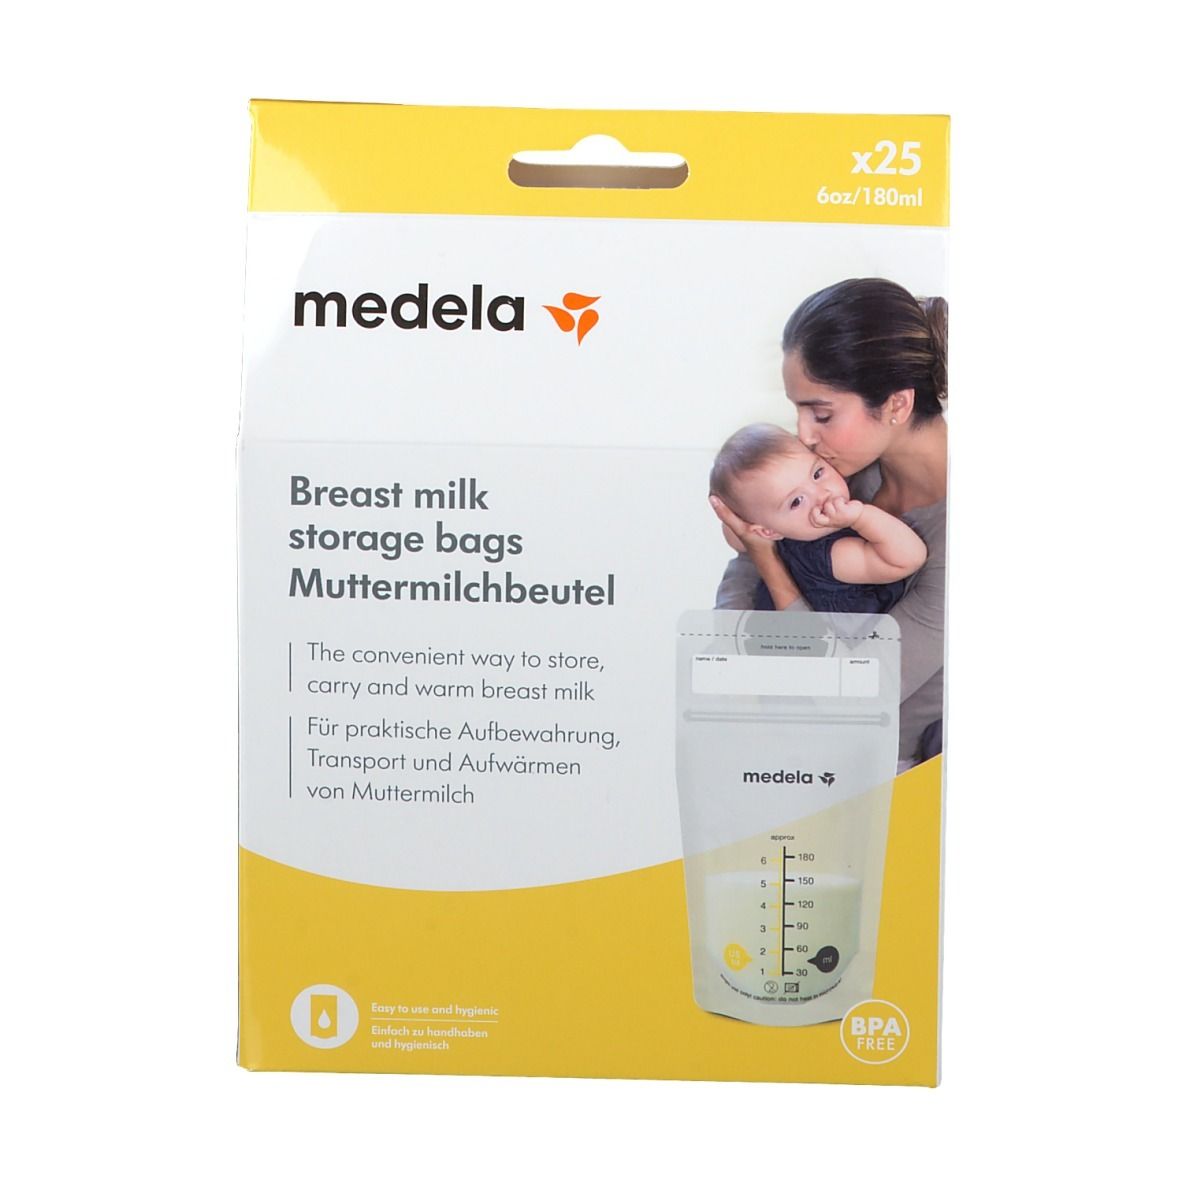 Sachets de conservation pour lait maternel 25Pcs - Medela